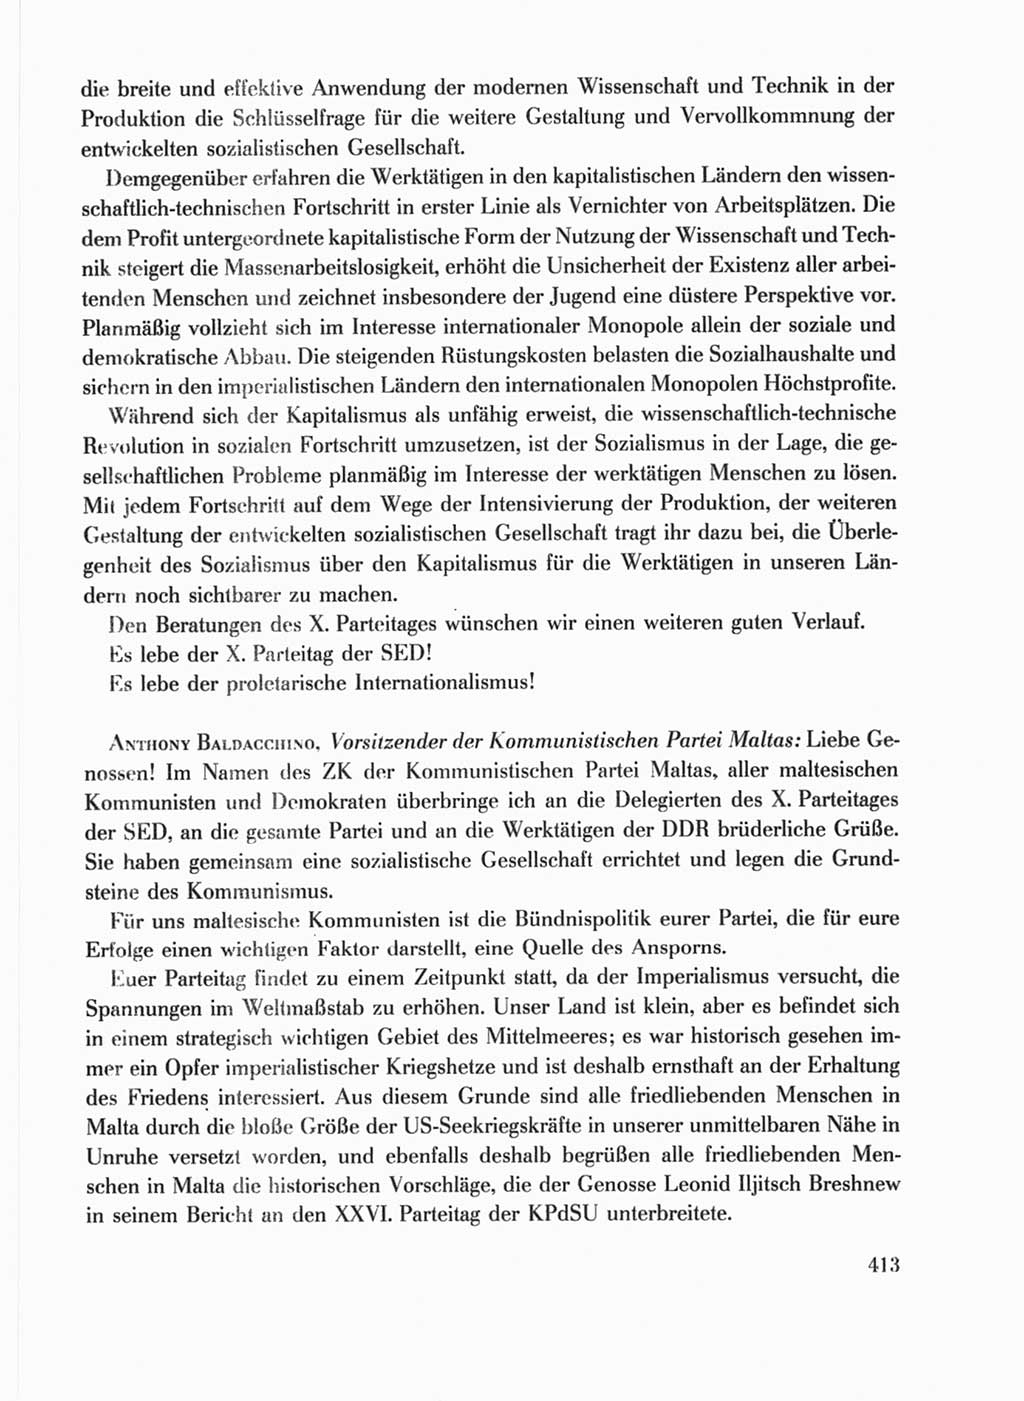 Protokoll der Verhandlungen des Ⅹ. Parteitages der Sozialistischen Einheitspartei Deutschlands (SED) [Deutsche Demokratische Republik (DDR)] 1981, Band 1, Seite 413 (Prot. Verh. Ⅹ. PT SED DDR 1981, Bd. 1, S. 413)